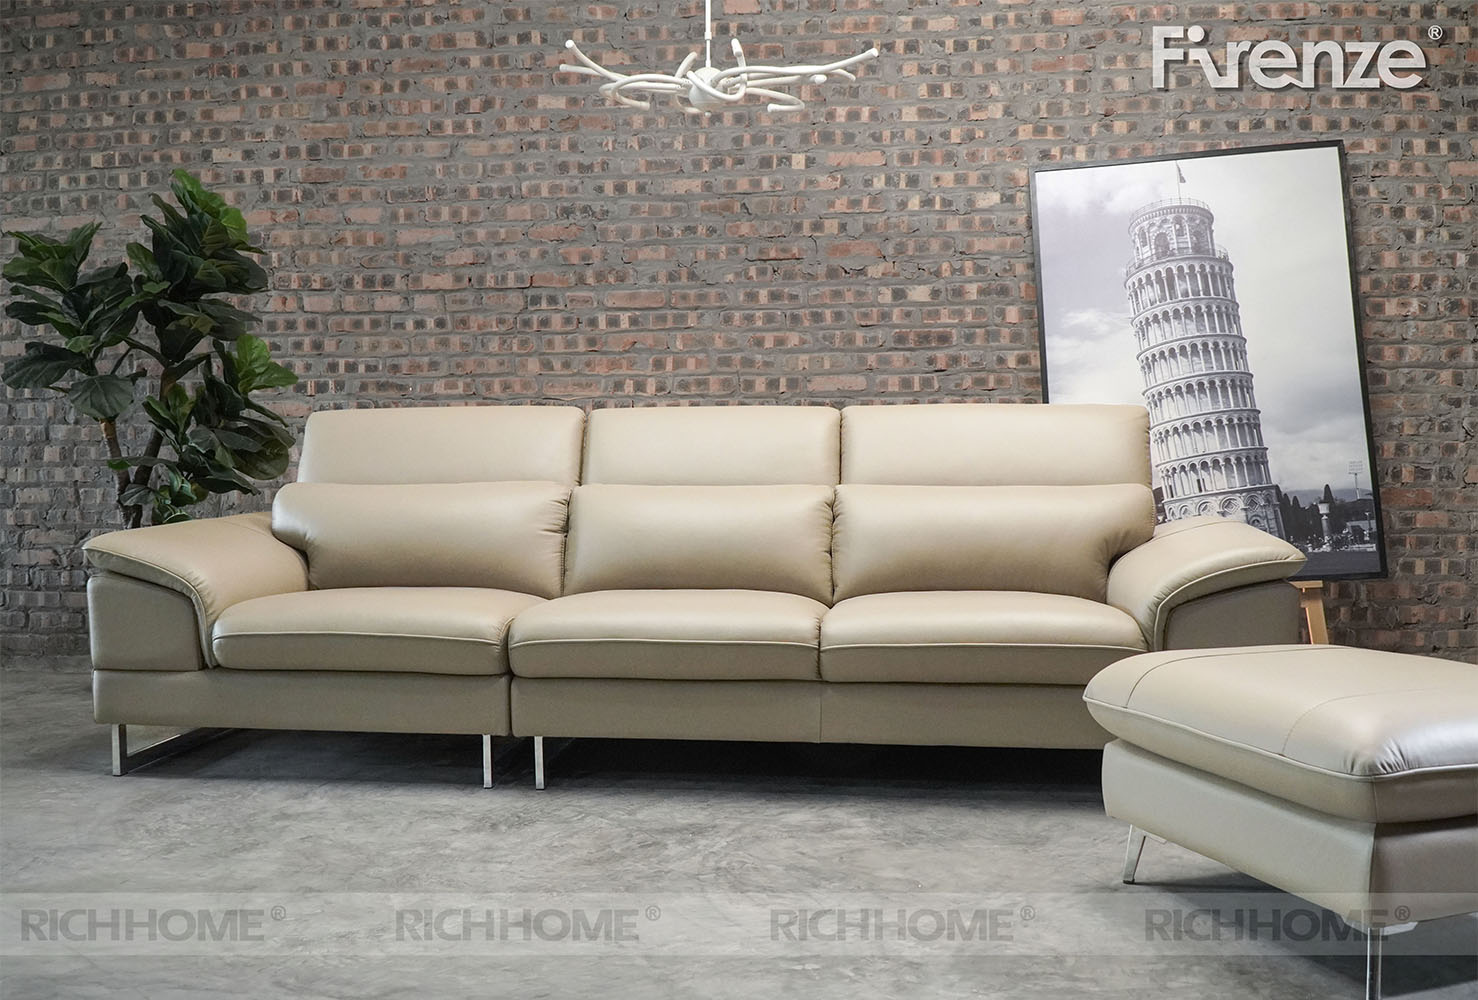 Kiểu dáng đẹp của ghế sofa cho chung cư - Ảnh 2